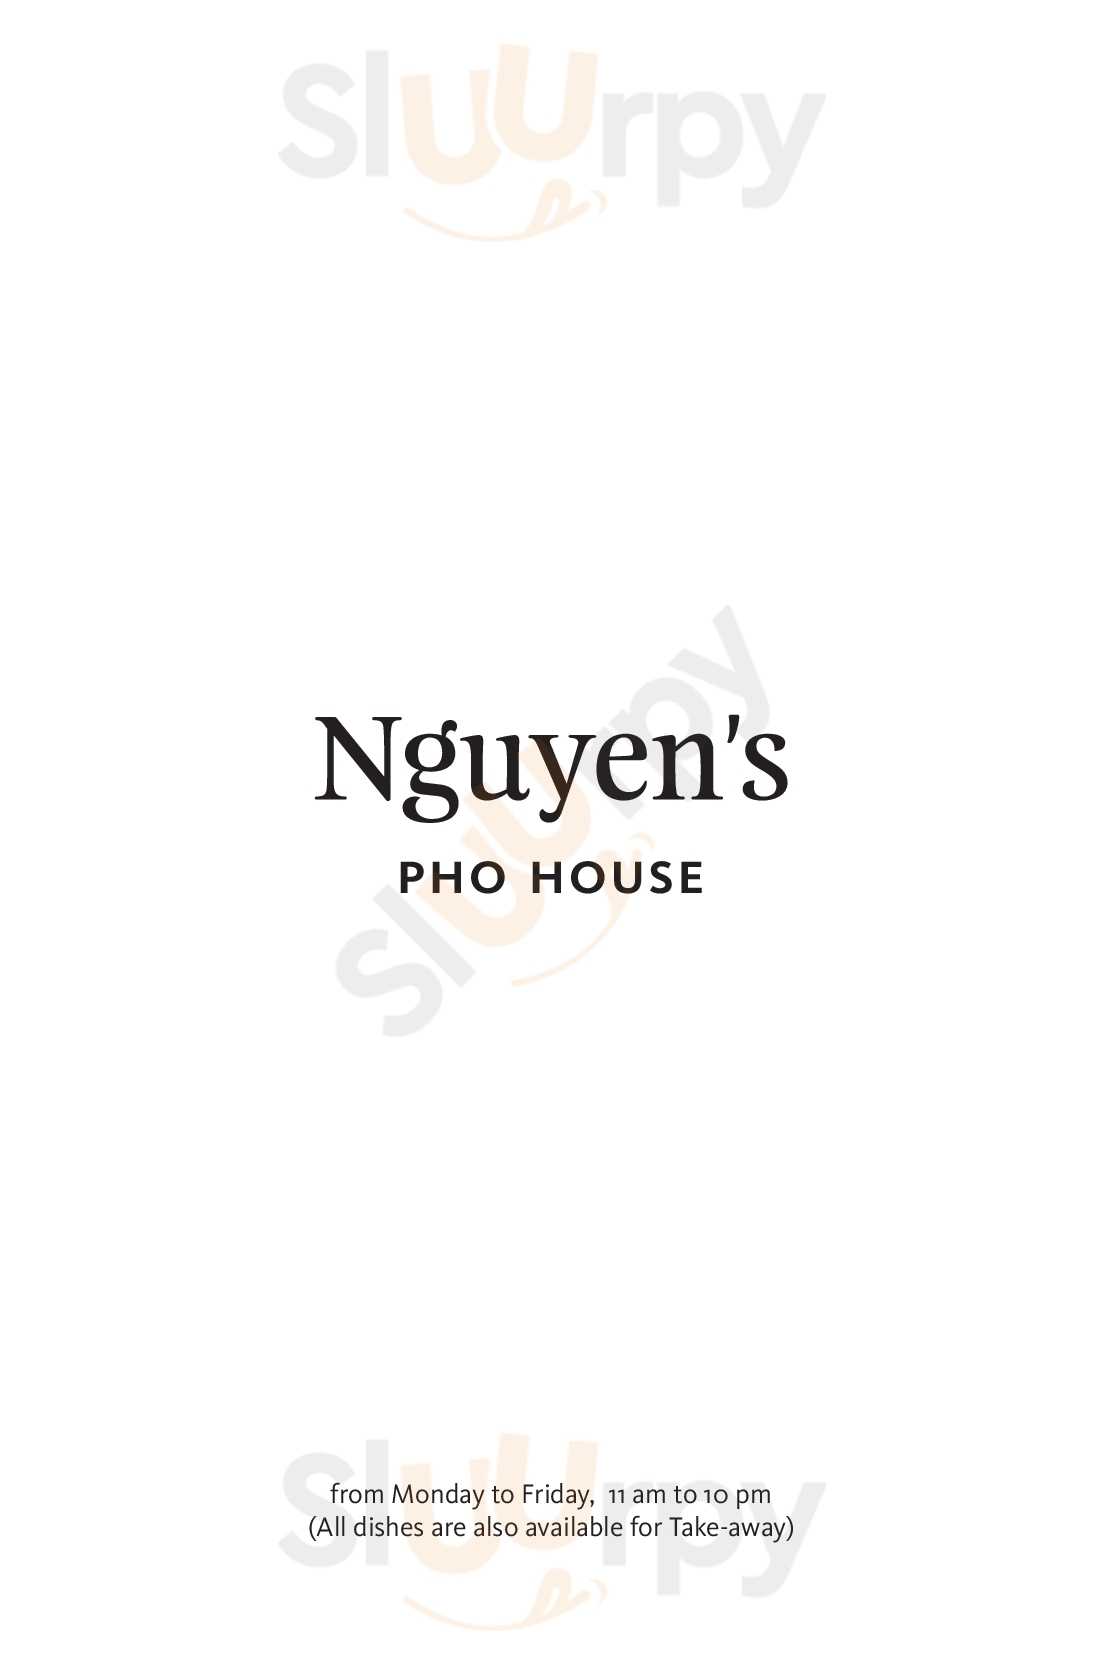 Nguyen's Pho House Wien Menu - 1